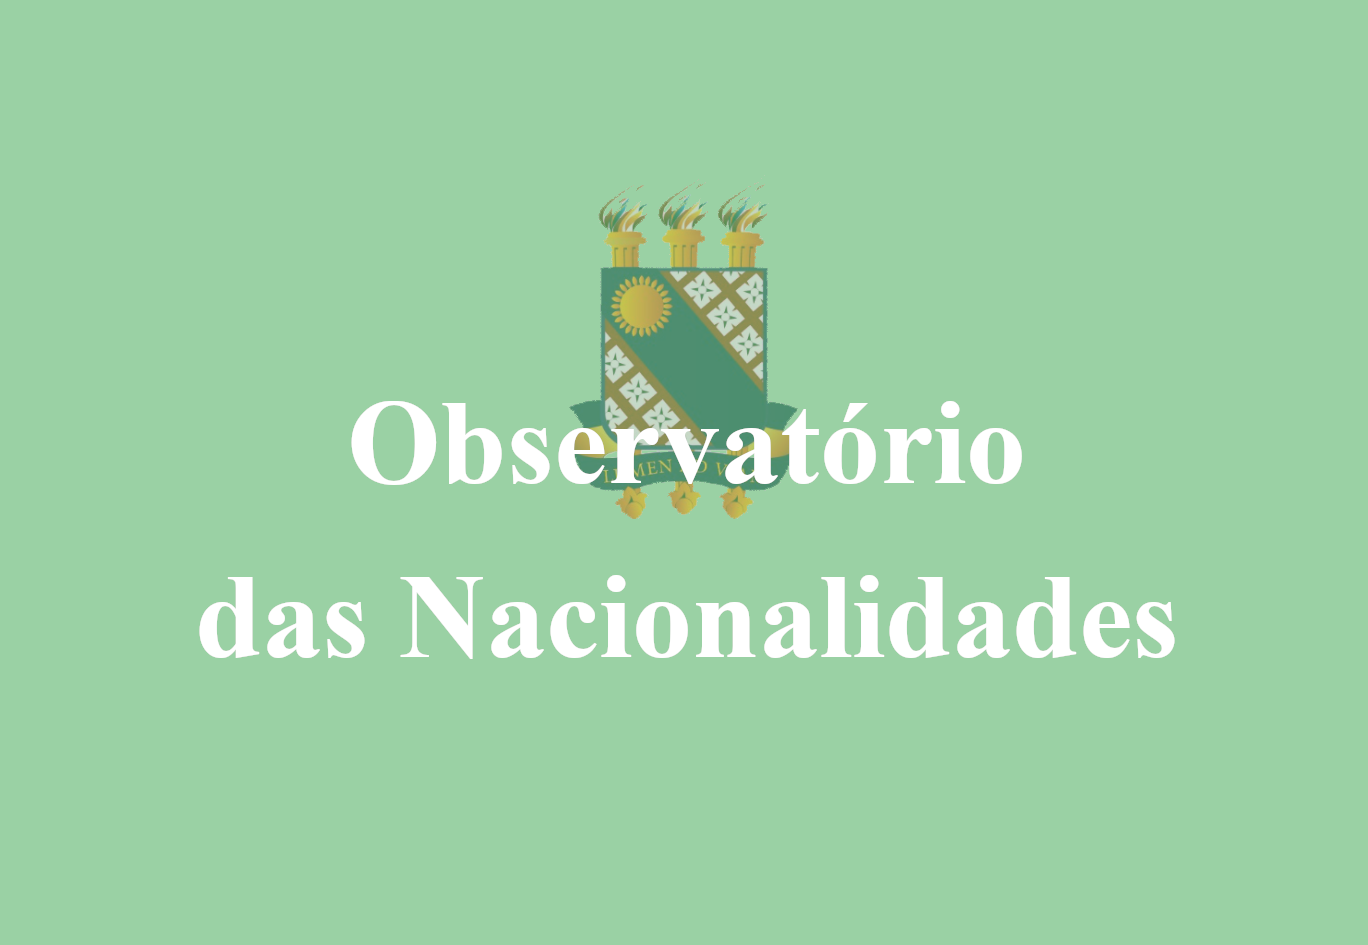 Observatório das Nacionalidades